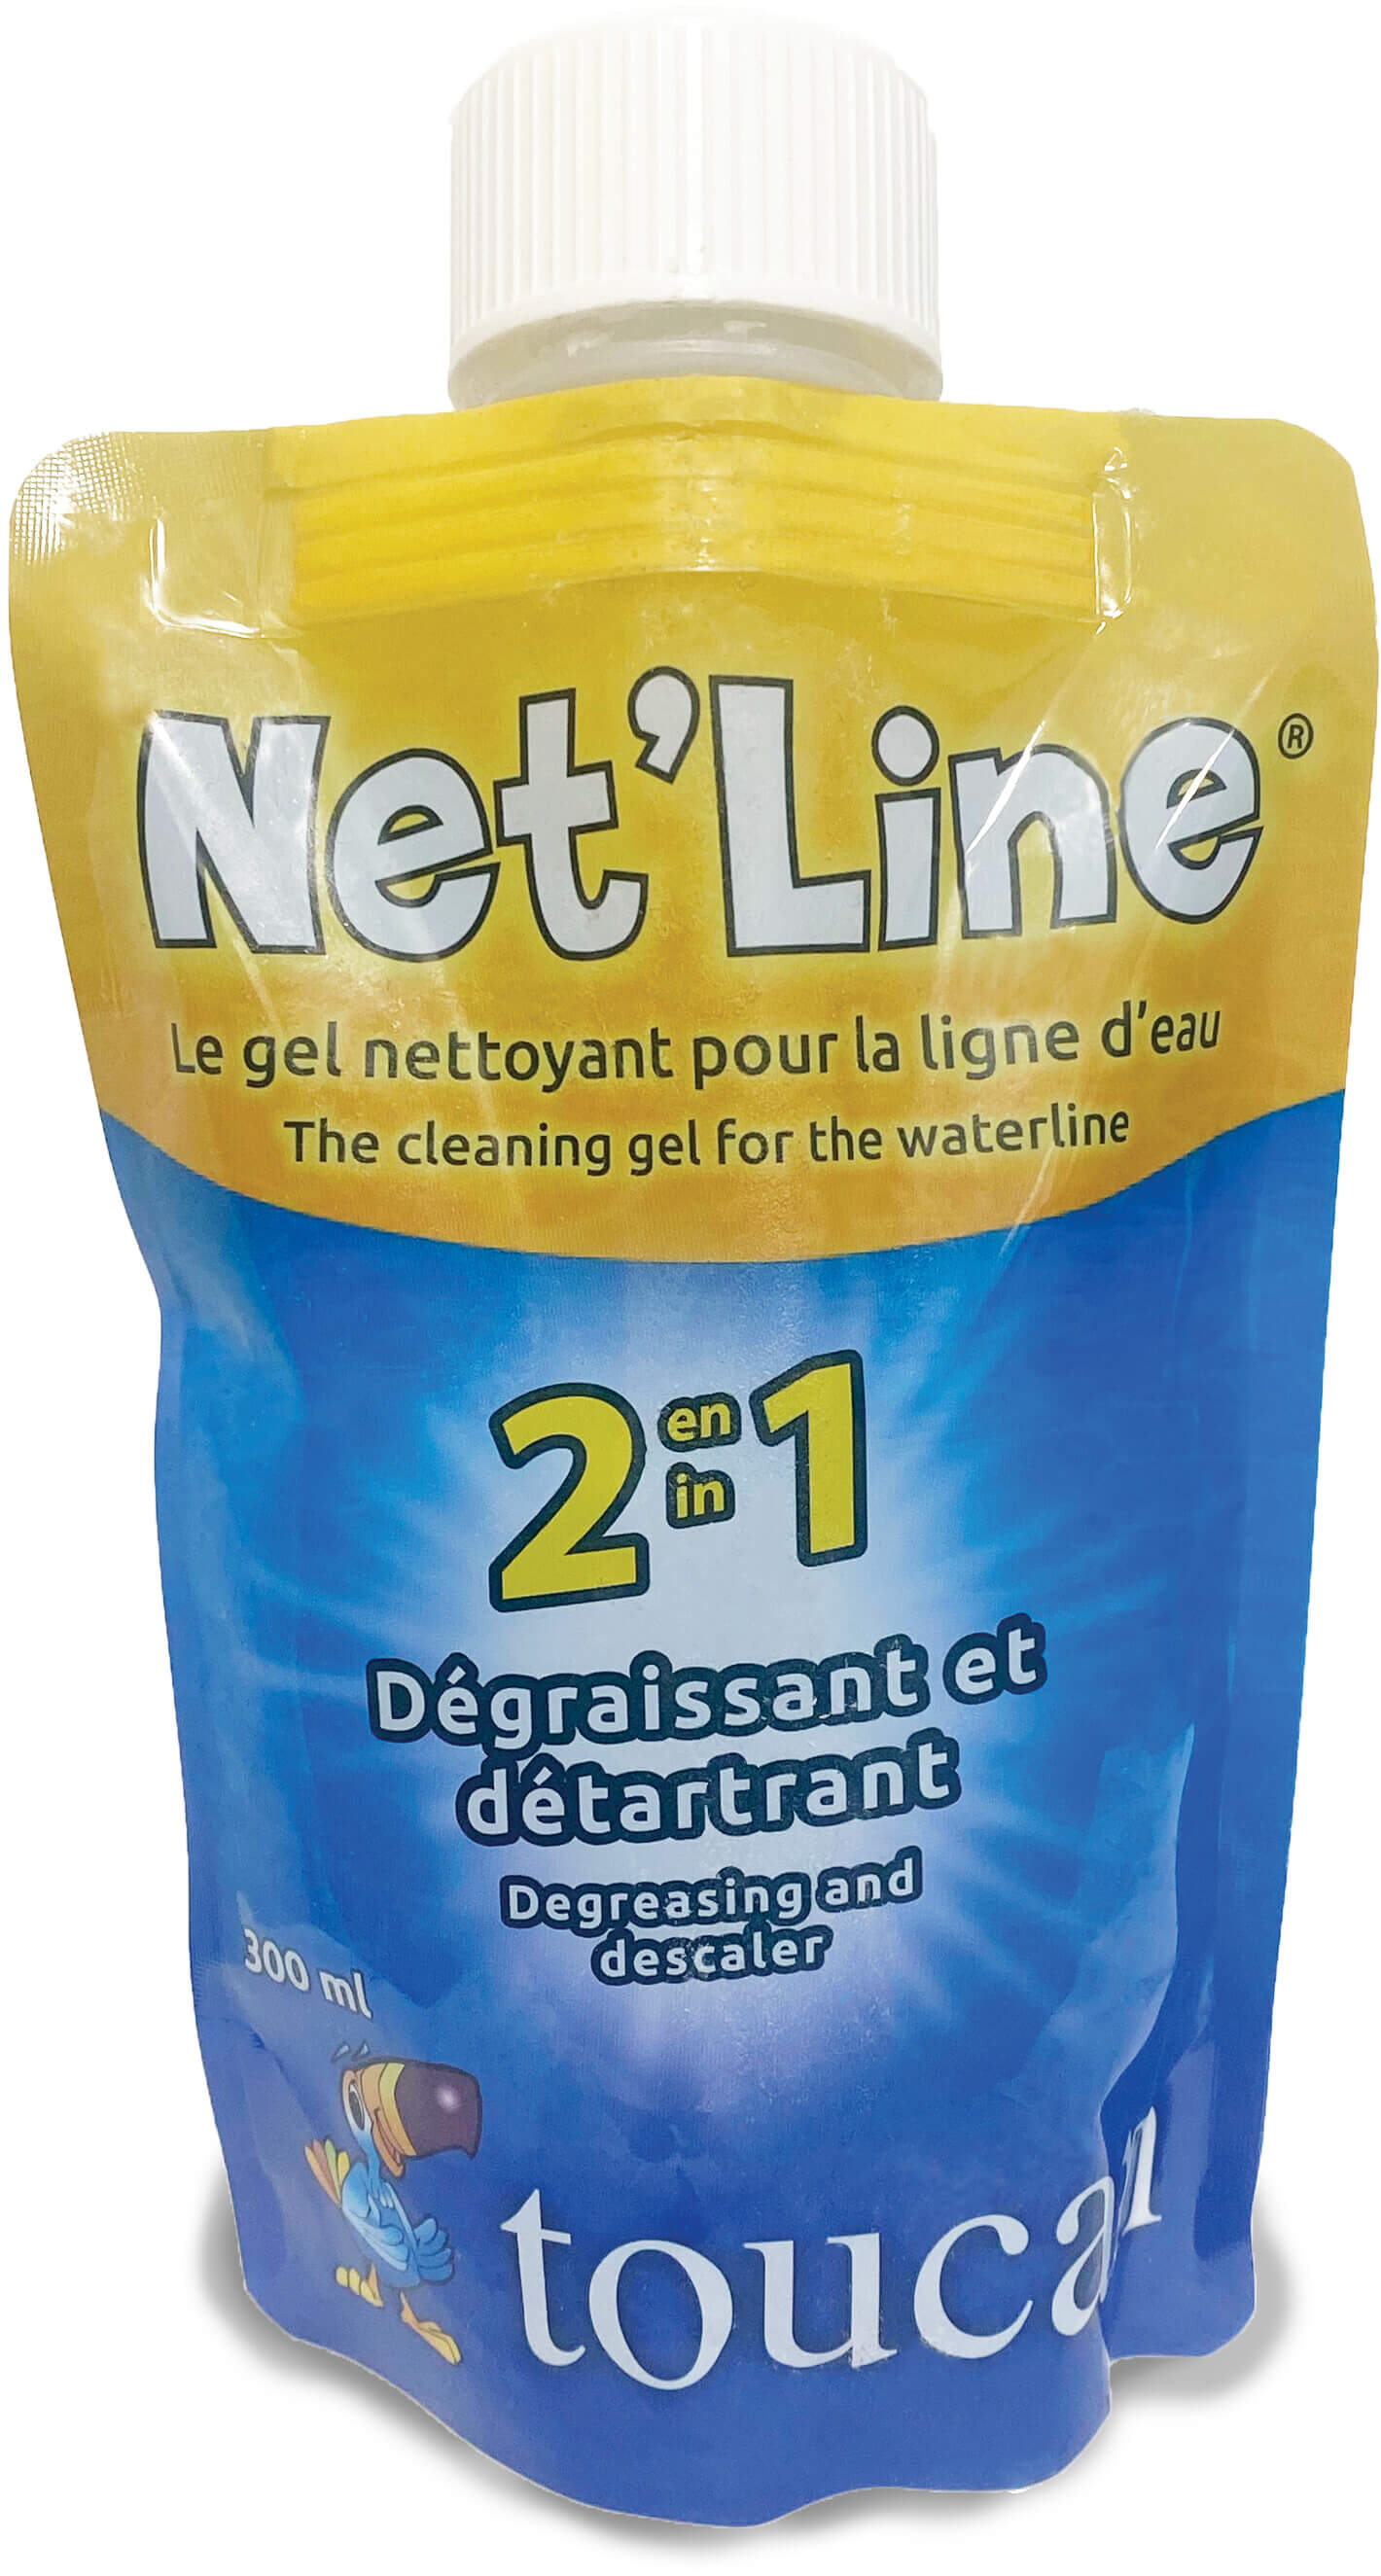 Net'Line cleaning gel for waterline type label EN/FR